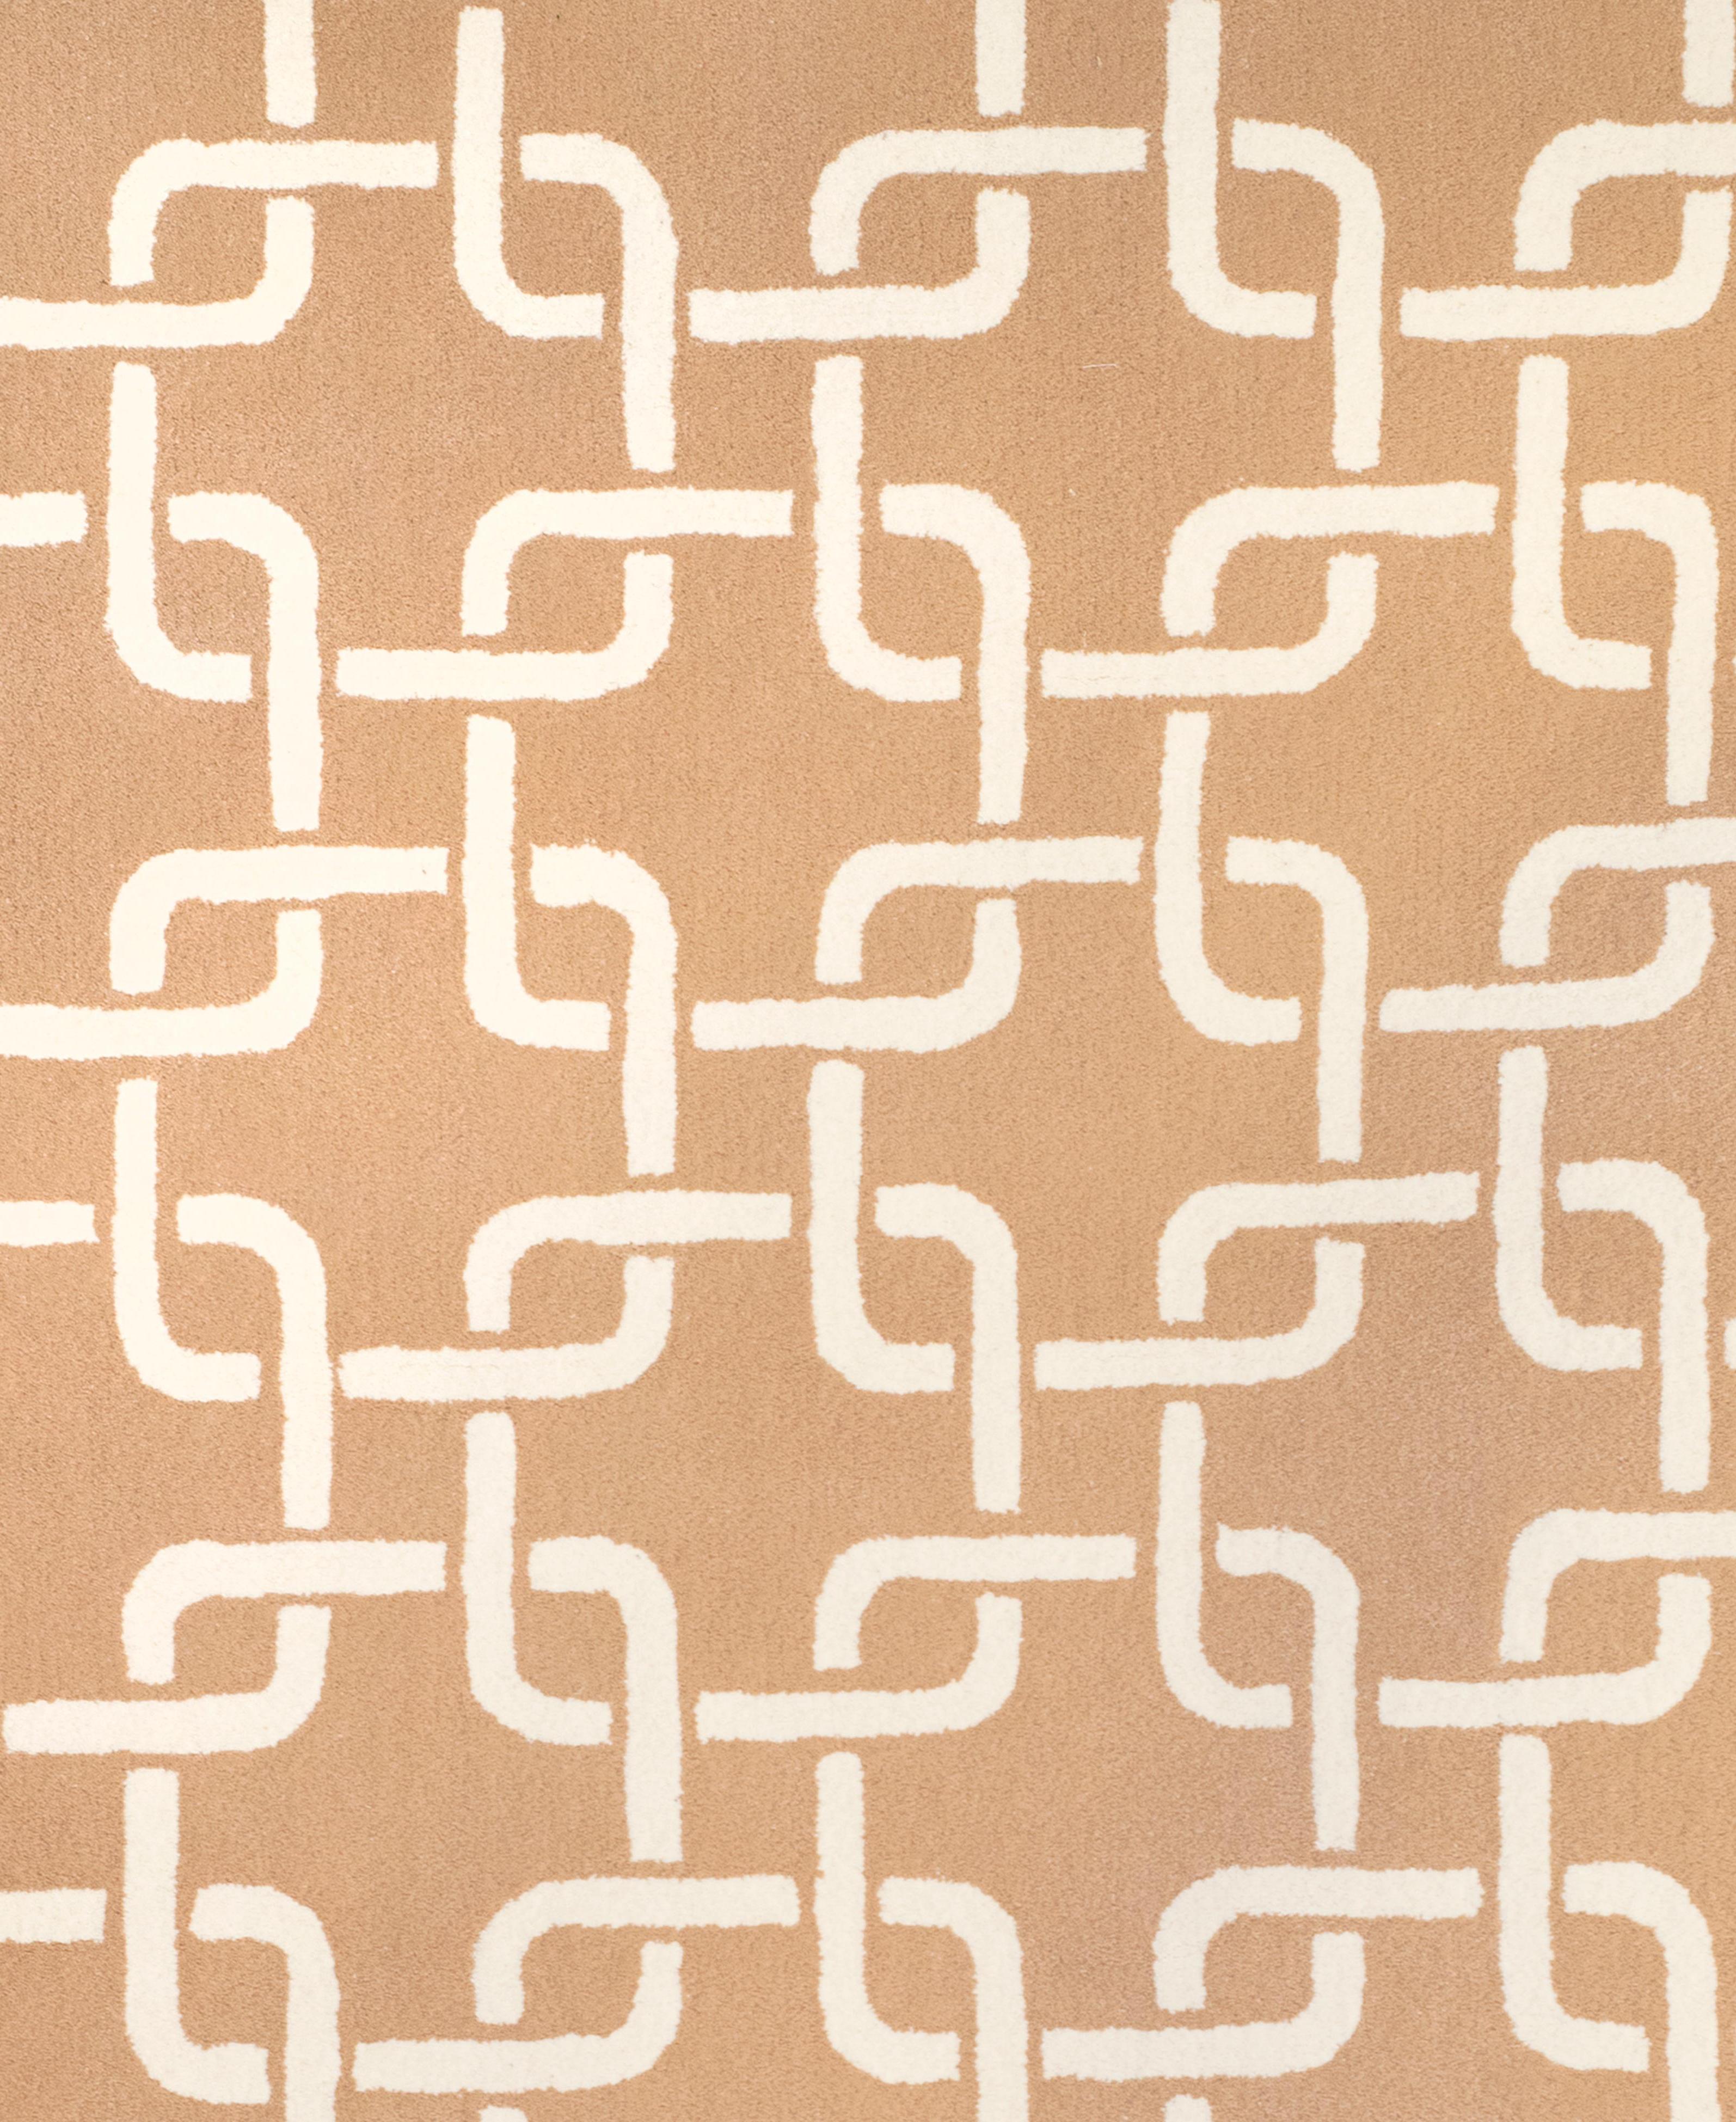 Dieser Teppich wird in Spanien mit der Technik des Handtuftens hergestellt.
Wir verwenden nur die feinsten natürlichen Garne, 100% reine Schurwolle mit einer Stärke von 15mm. 

- Auf Wunsch in jeder Größe und in jeder Farbe anpassbar.
- Regelmäßig